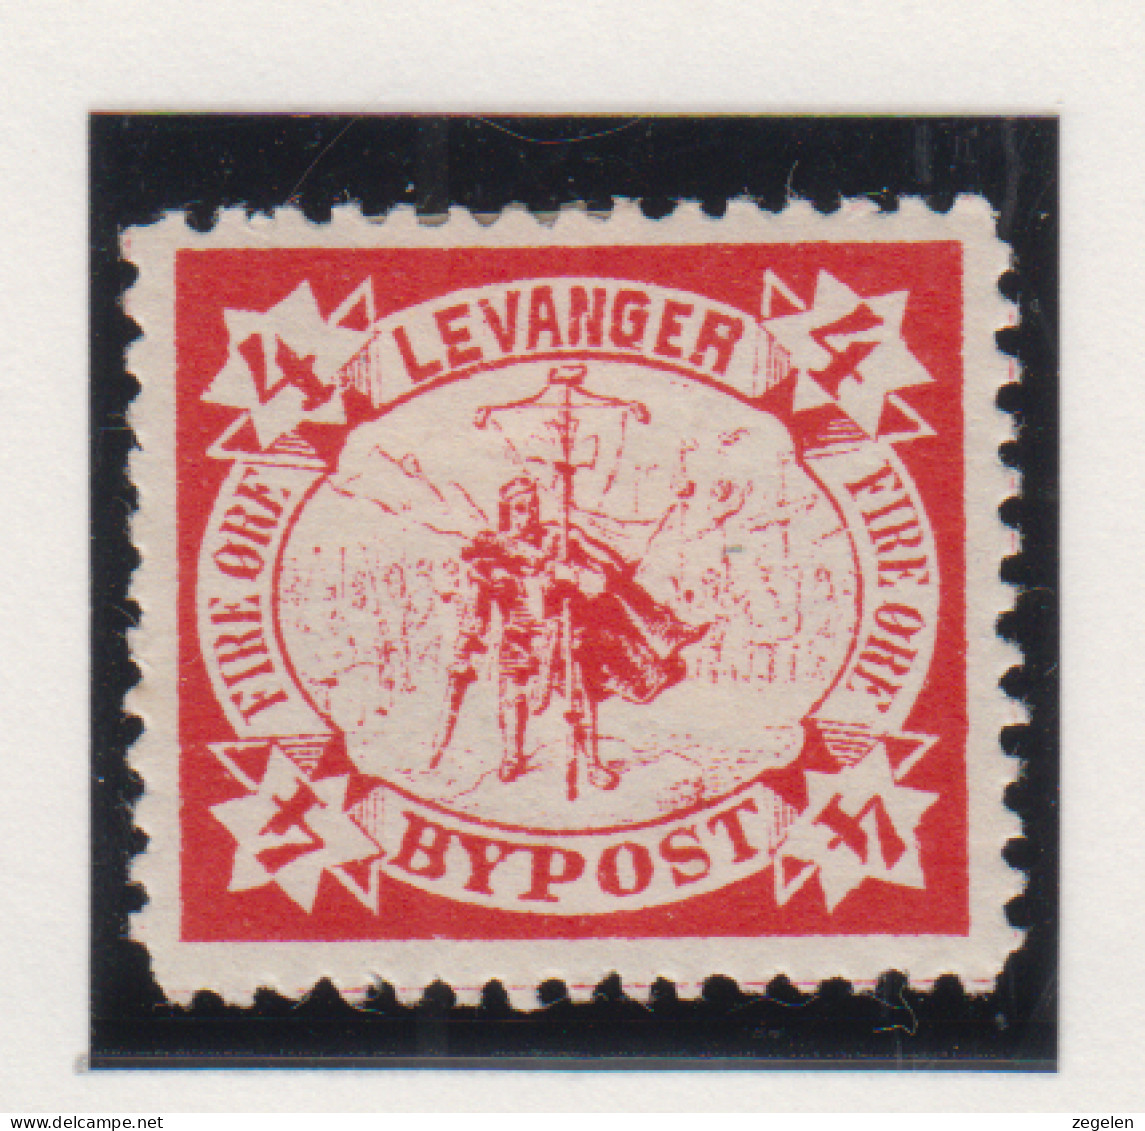 Noorwegen Lokale Zegel   Katalog Over Norges Byposter Levanger Bypost 2 - Local Post Stamps